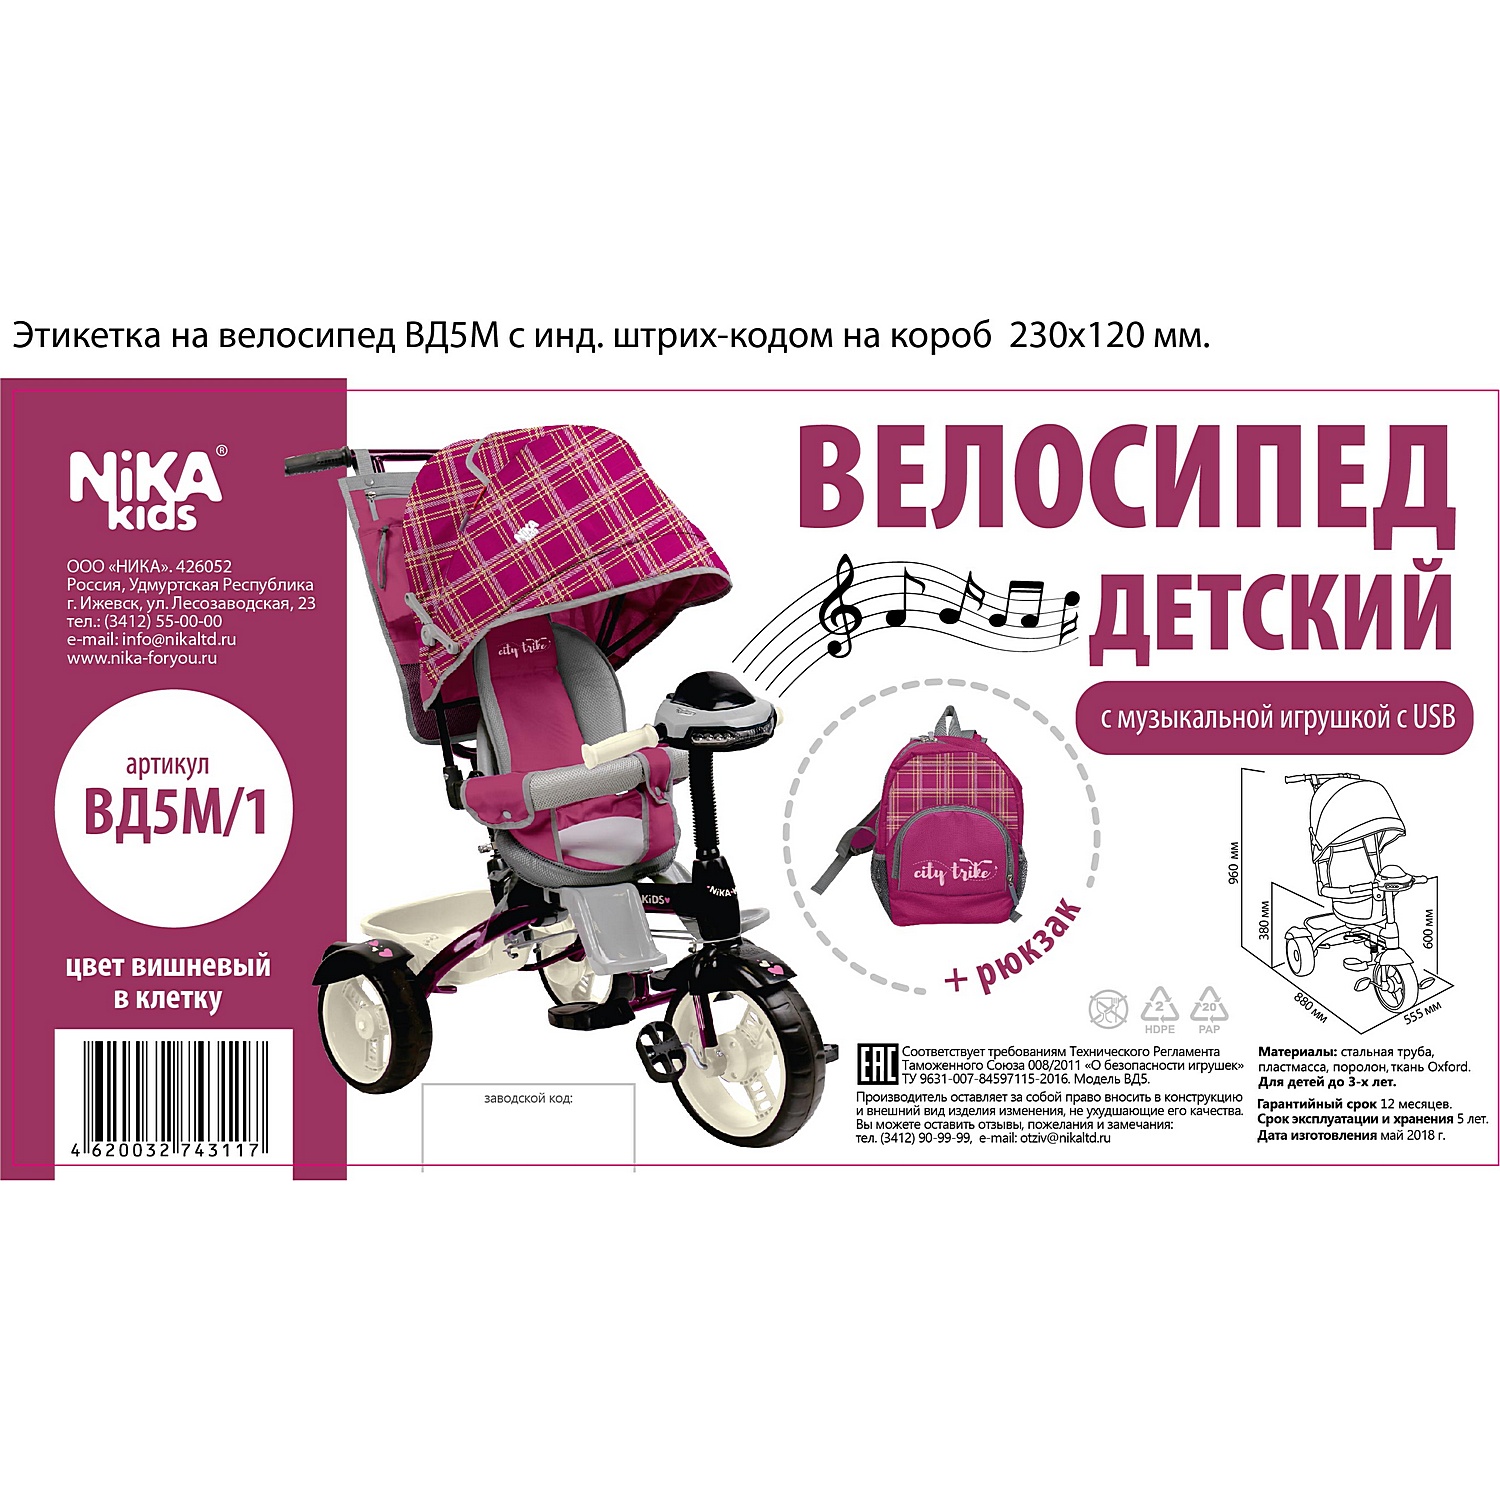 Велосипед Nika ВД5М/1 - фото 2